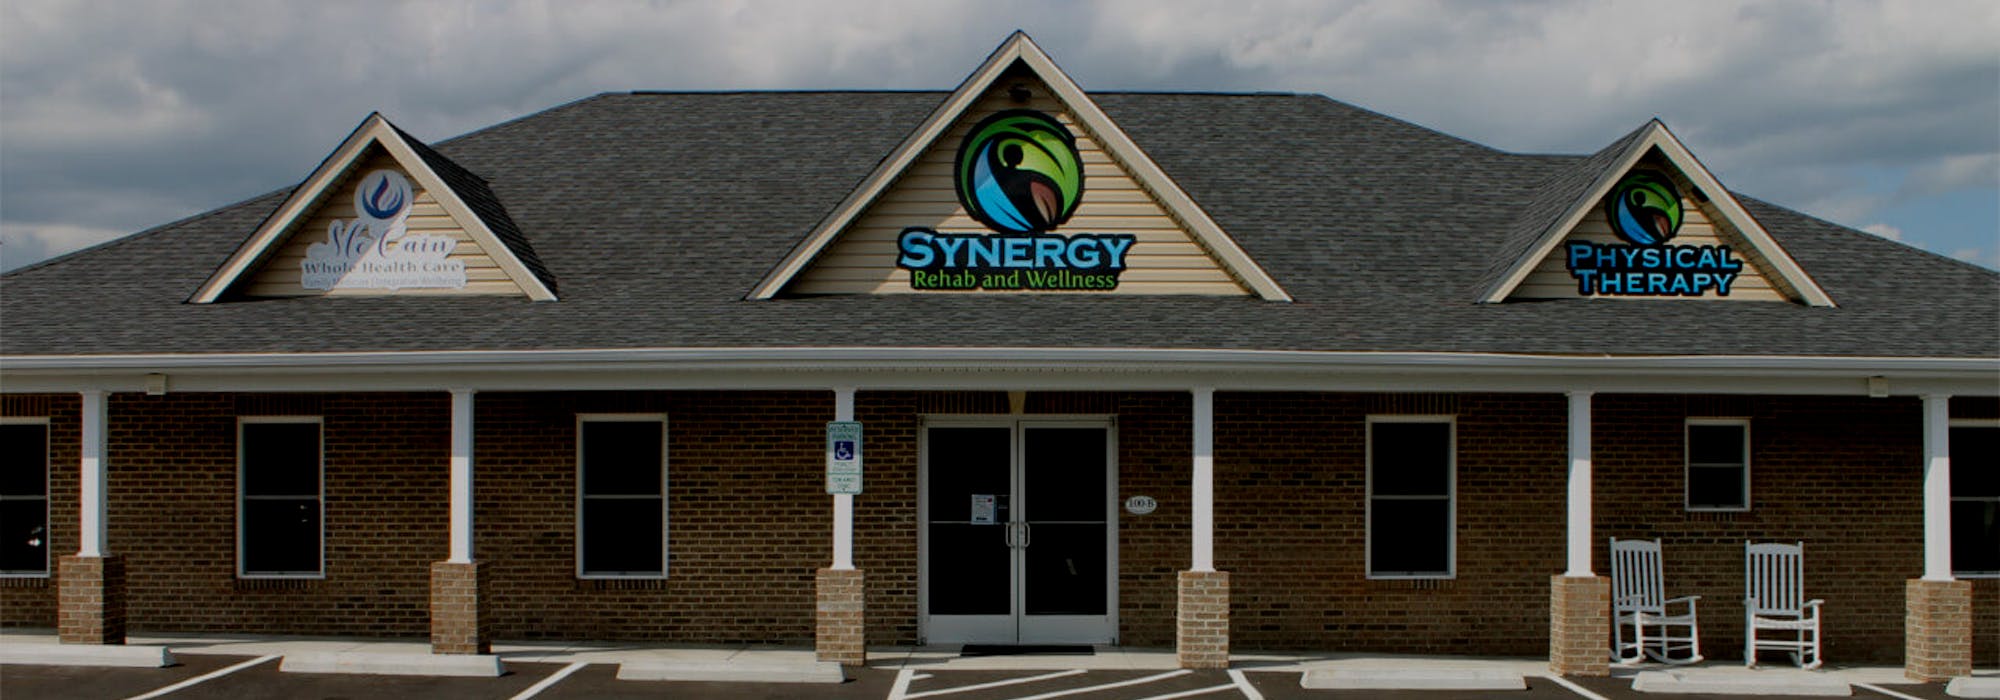 Physical Therapy Waynesboro, VA - Synergy Rehab & Wellness - Buena Vista,  Staunton and Waynesboro VA